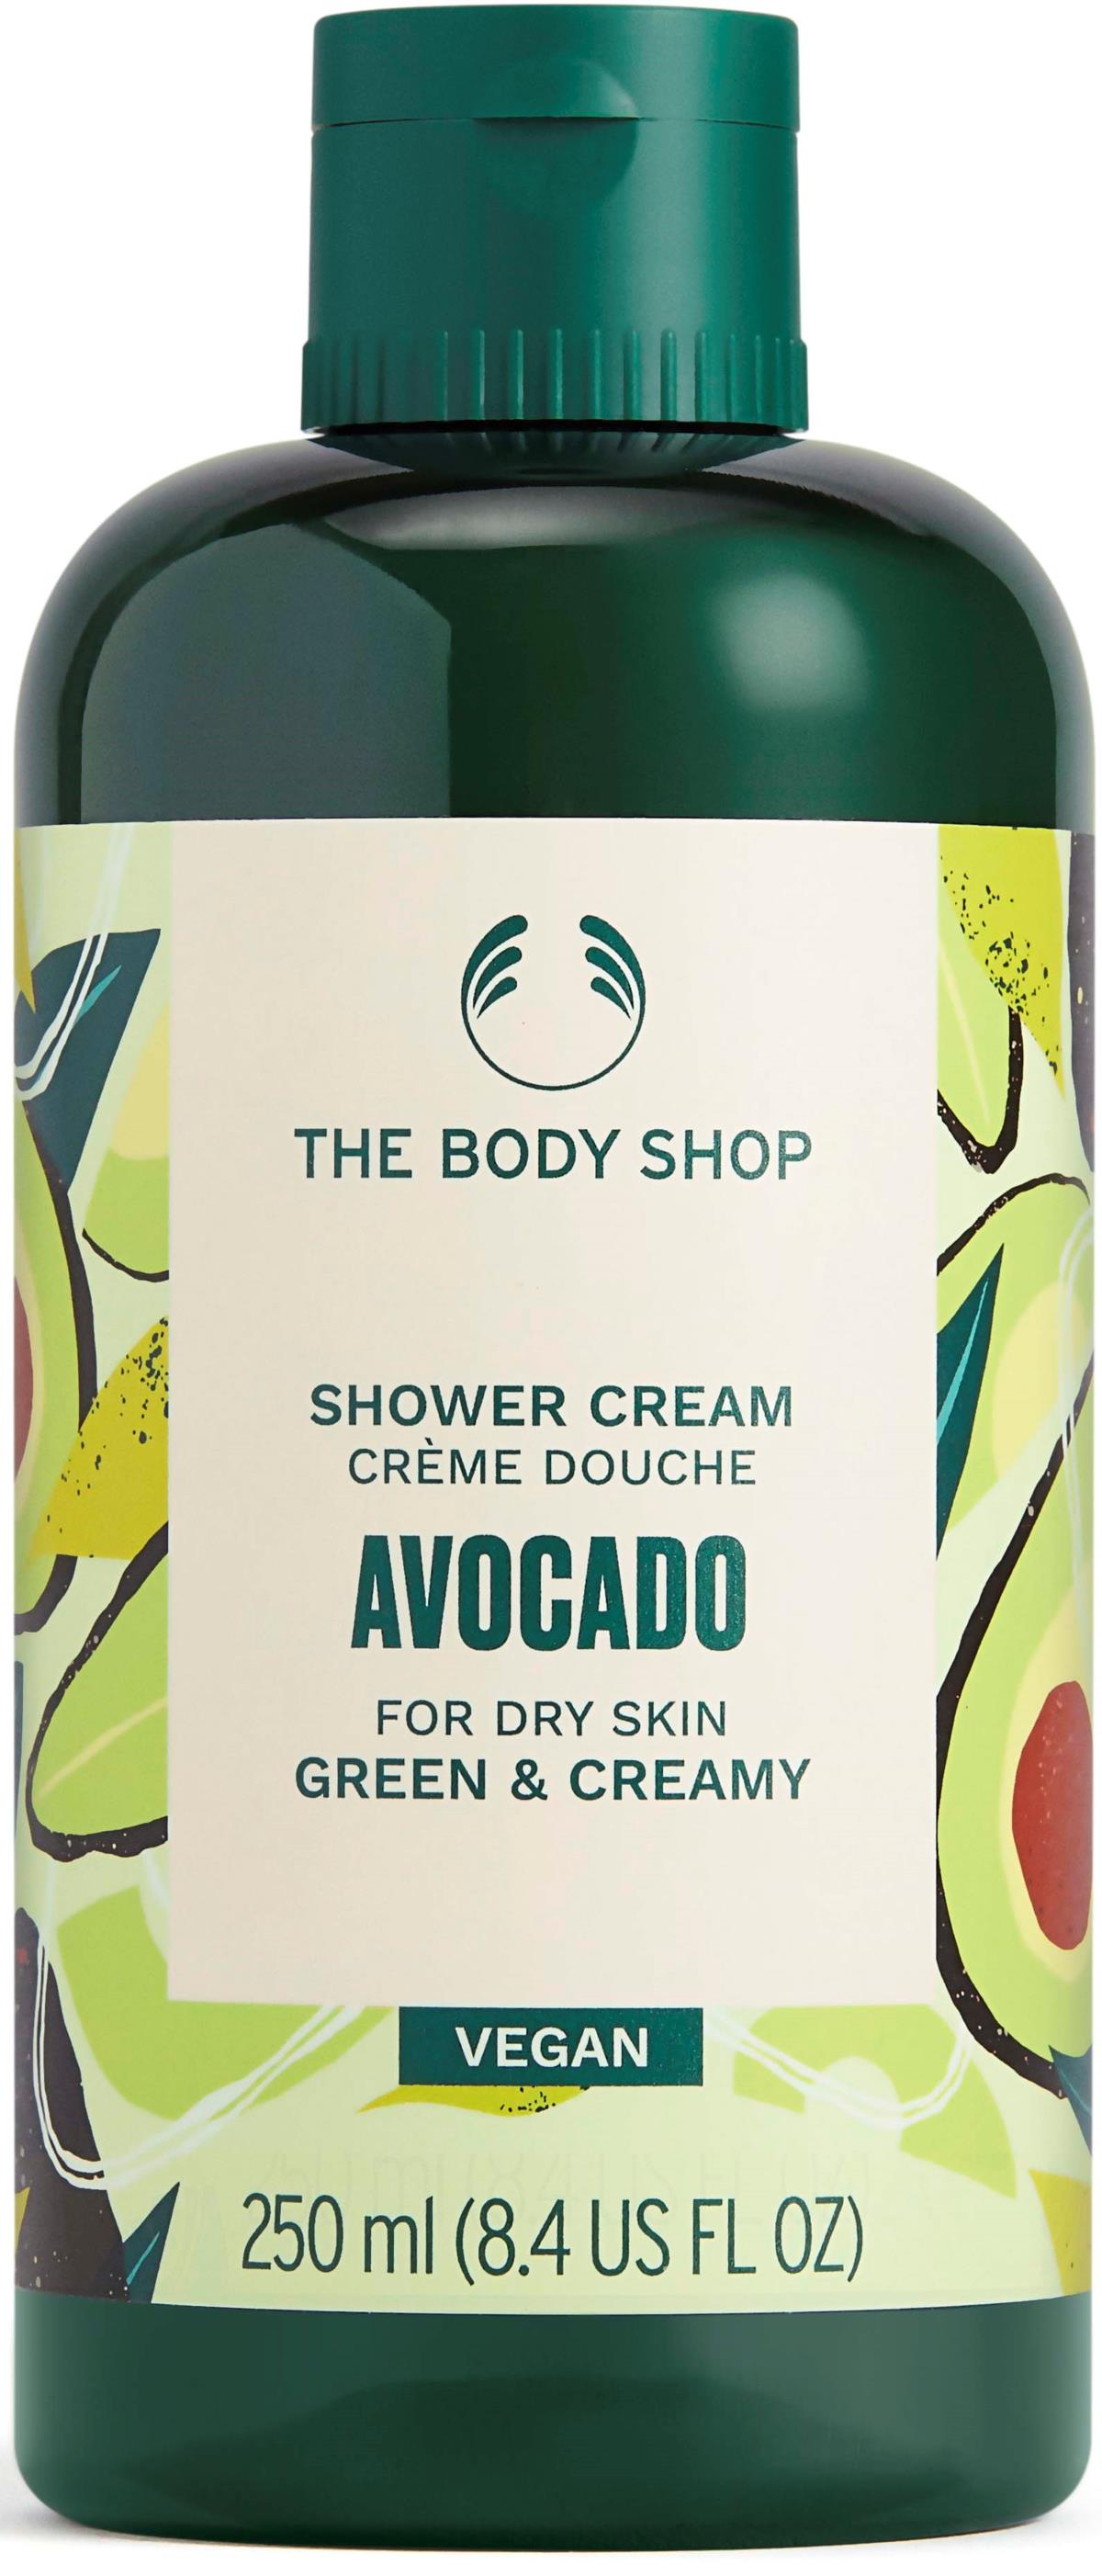 The Body Shop Shower Cream Avocado 250 Ml 3210 282 0250 1 ?ref=1219359&w=1200&h=2804&quality=75